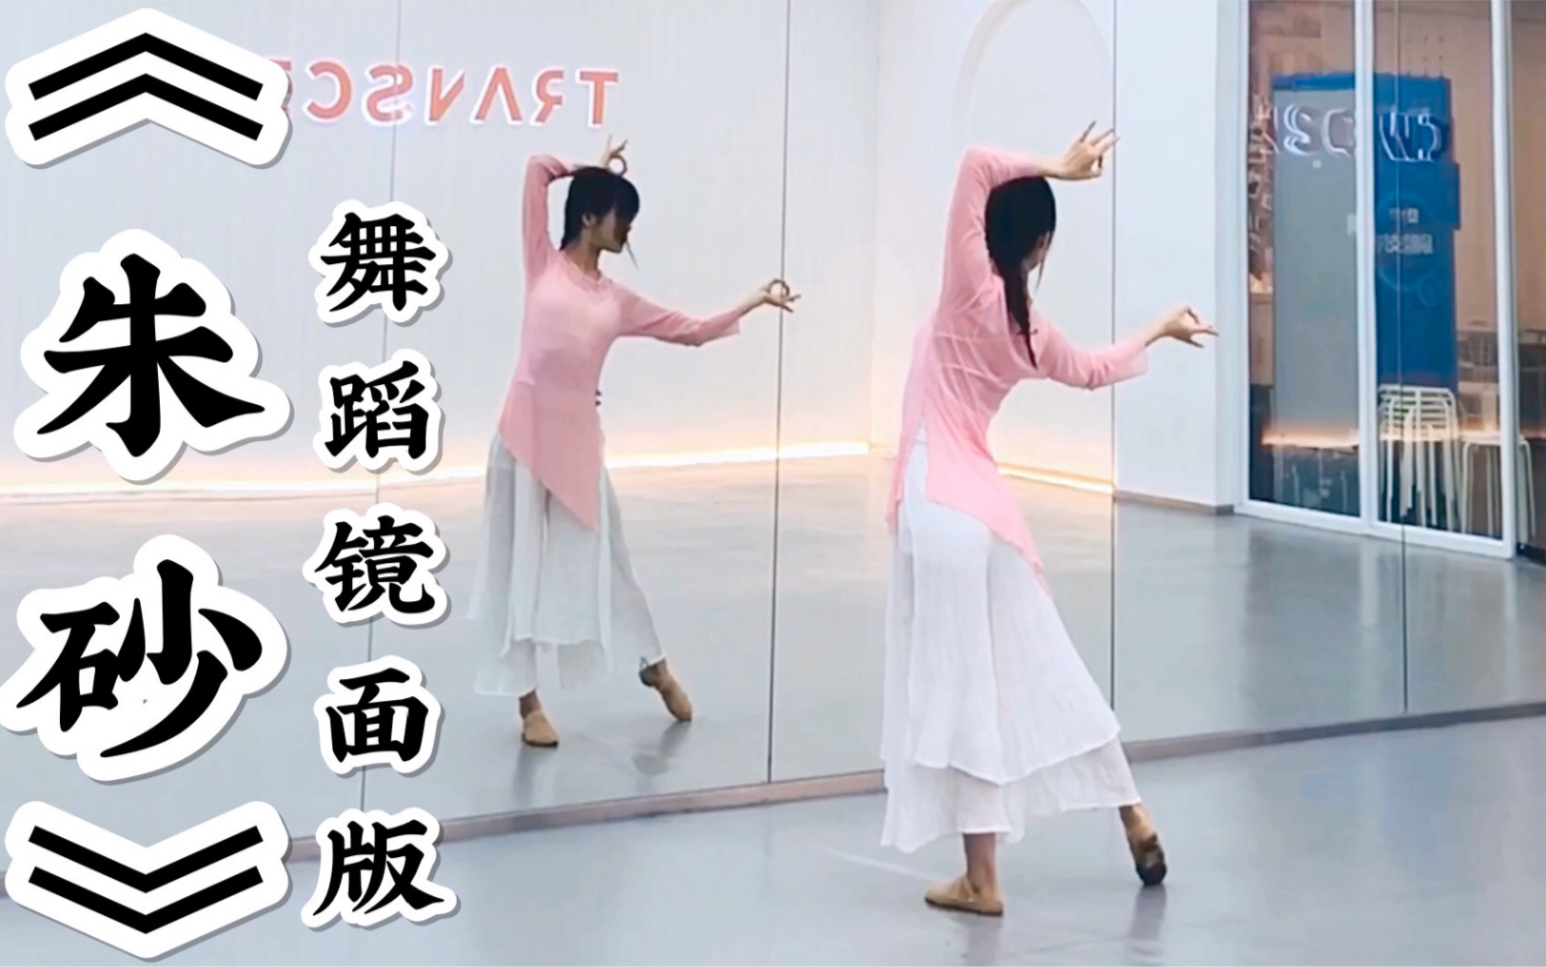 【盖盖】清新卡点中国风爵士舞《朱砂》舞蹈镜面版